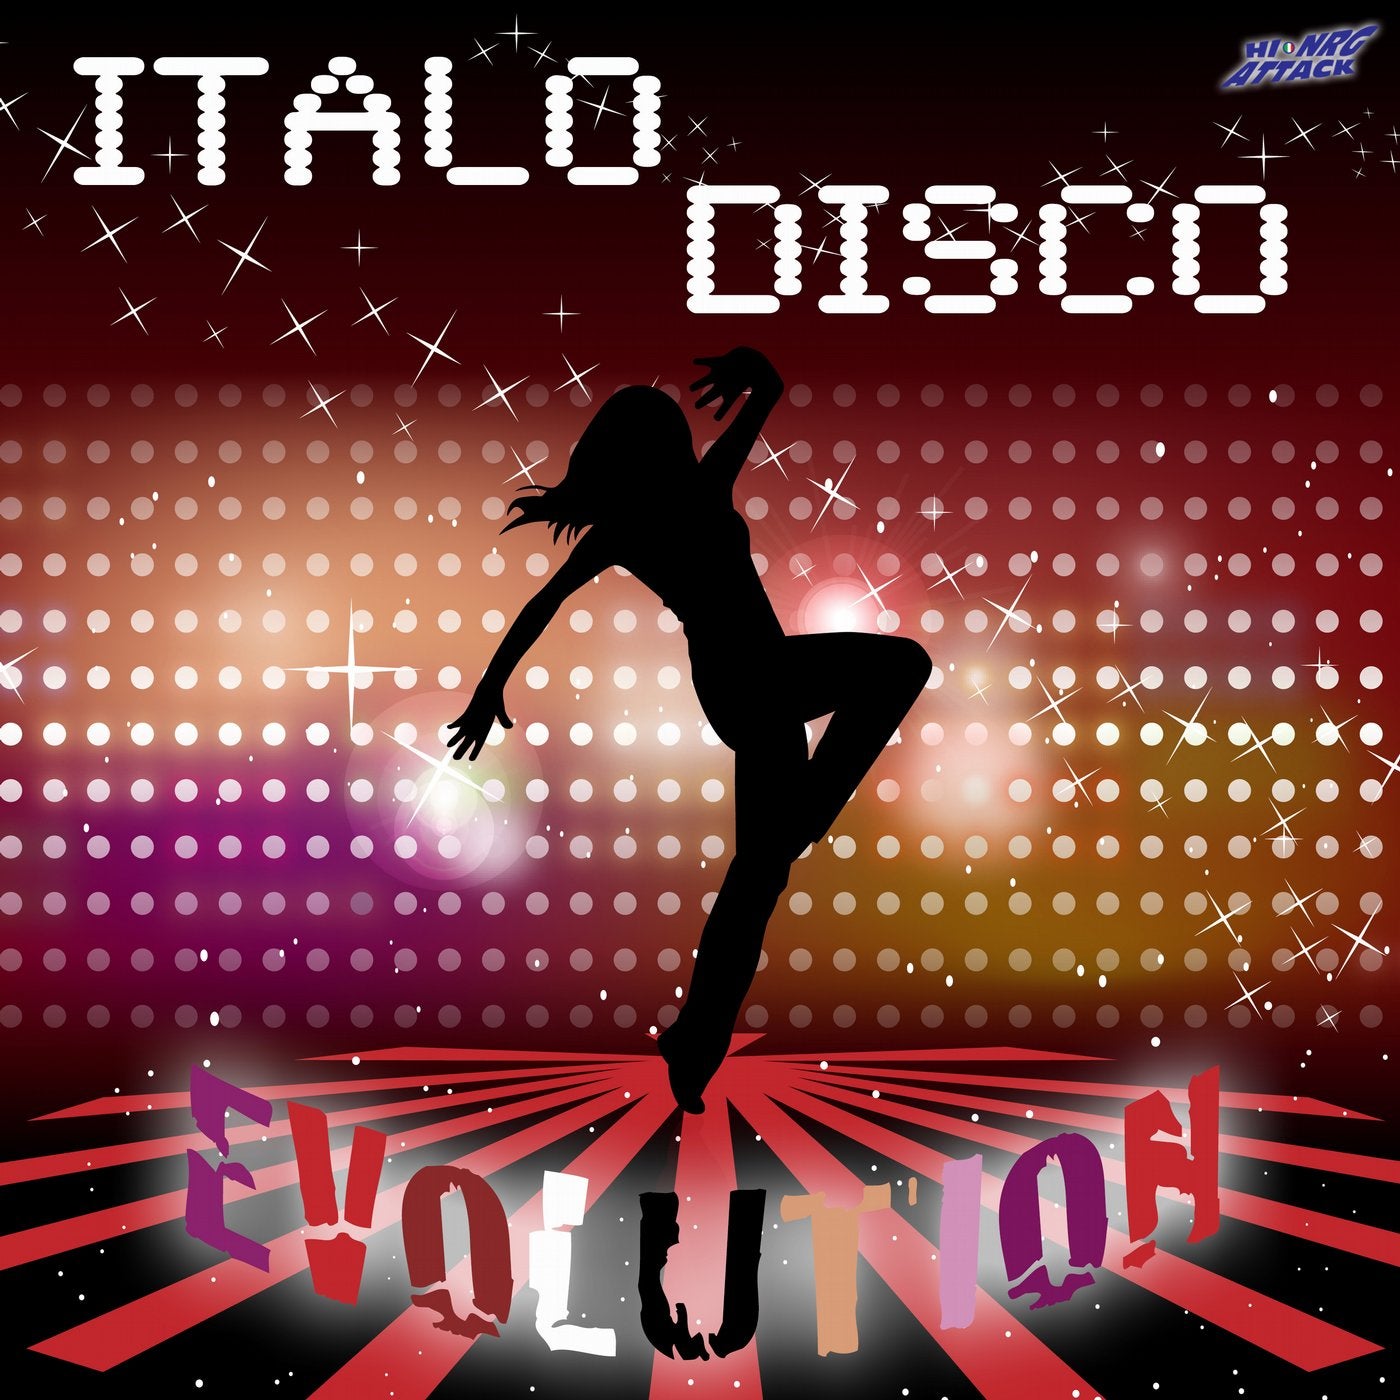 New euro italo disco